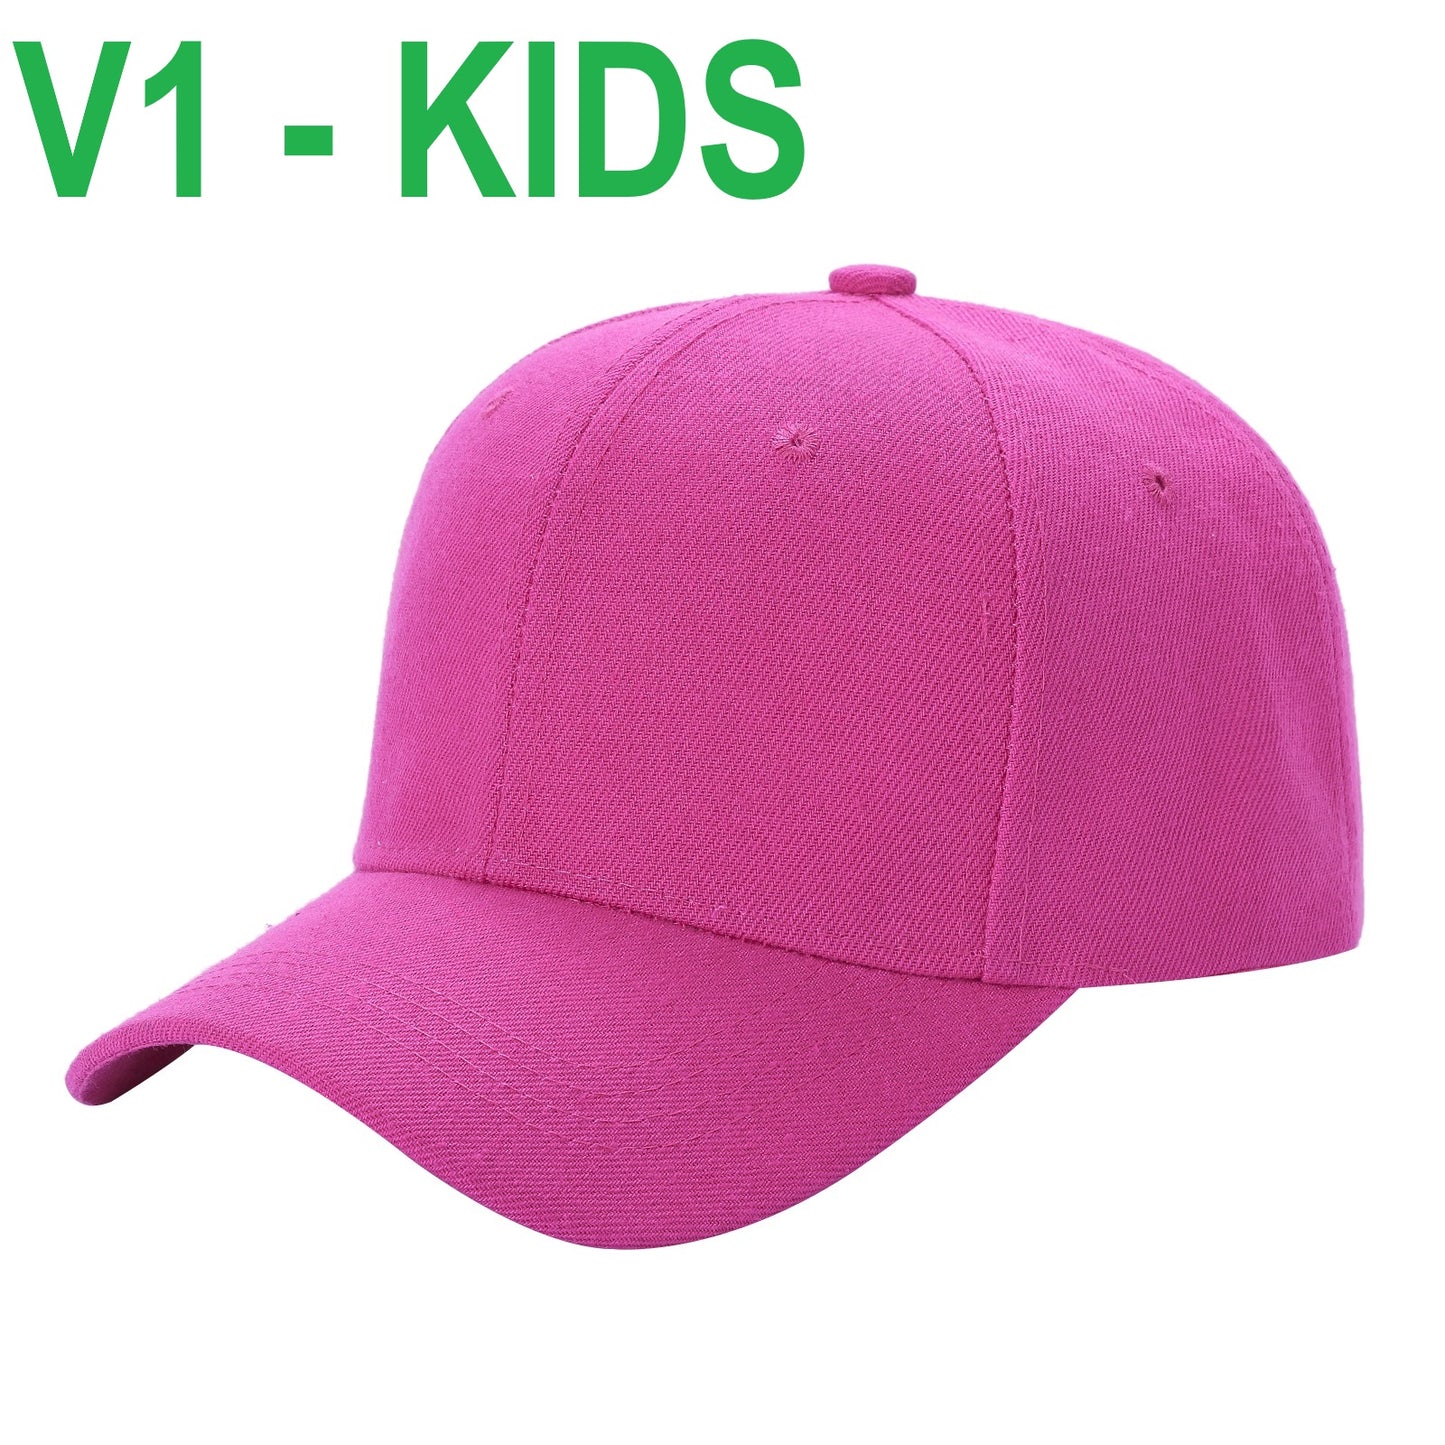 V1 KIDS - Gorra de béisbol lisa con velcro